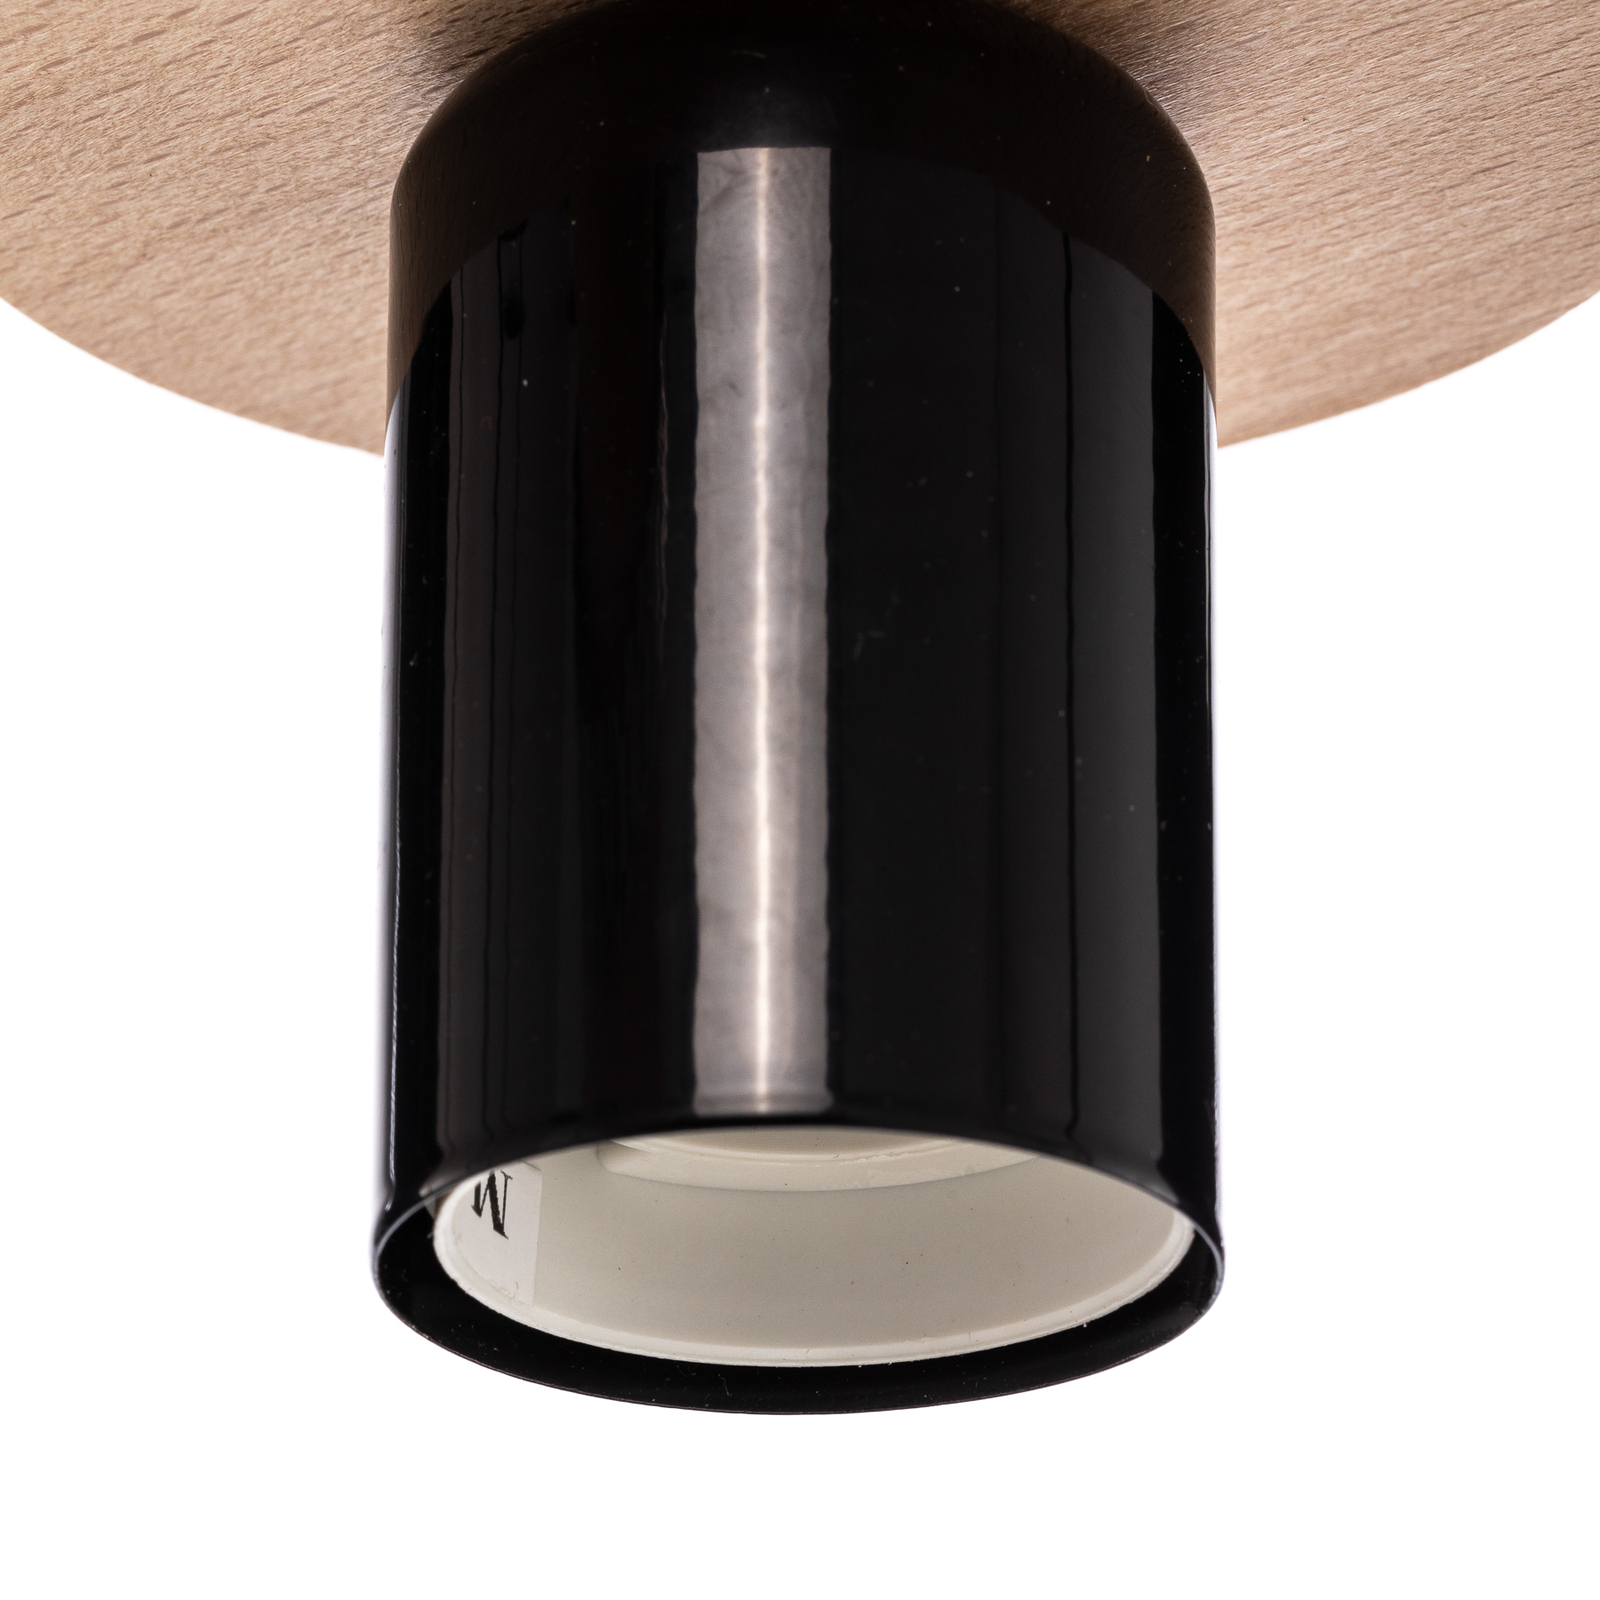 Envostar Yorik hanglamp, 5-lamps, zwart/licht hout